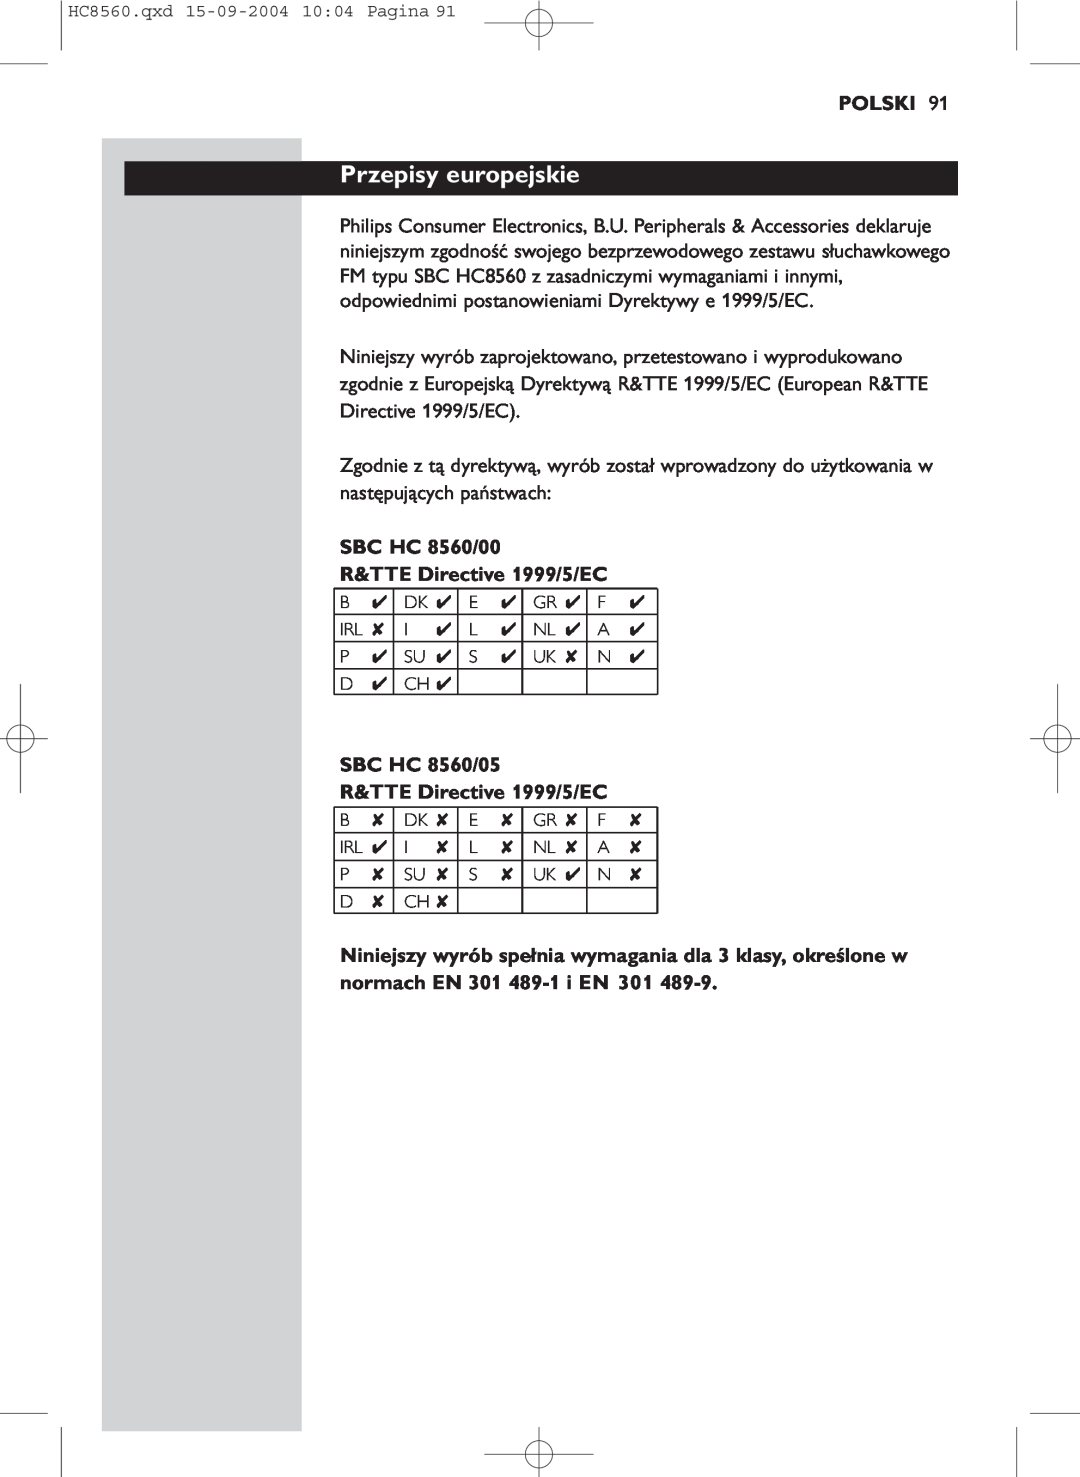 Philips manual Przepisy europejskie, Polski, SBC HC 8560/00 R&TTE Directive 1999/5/EC 